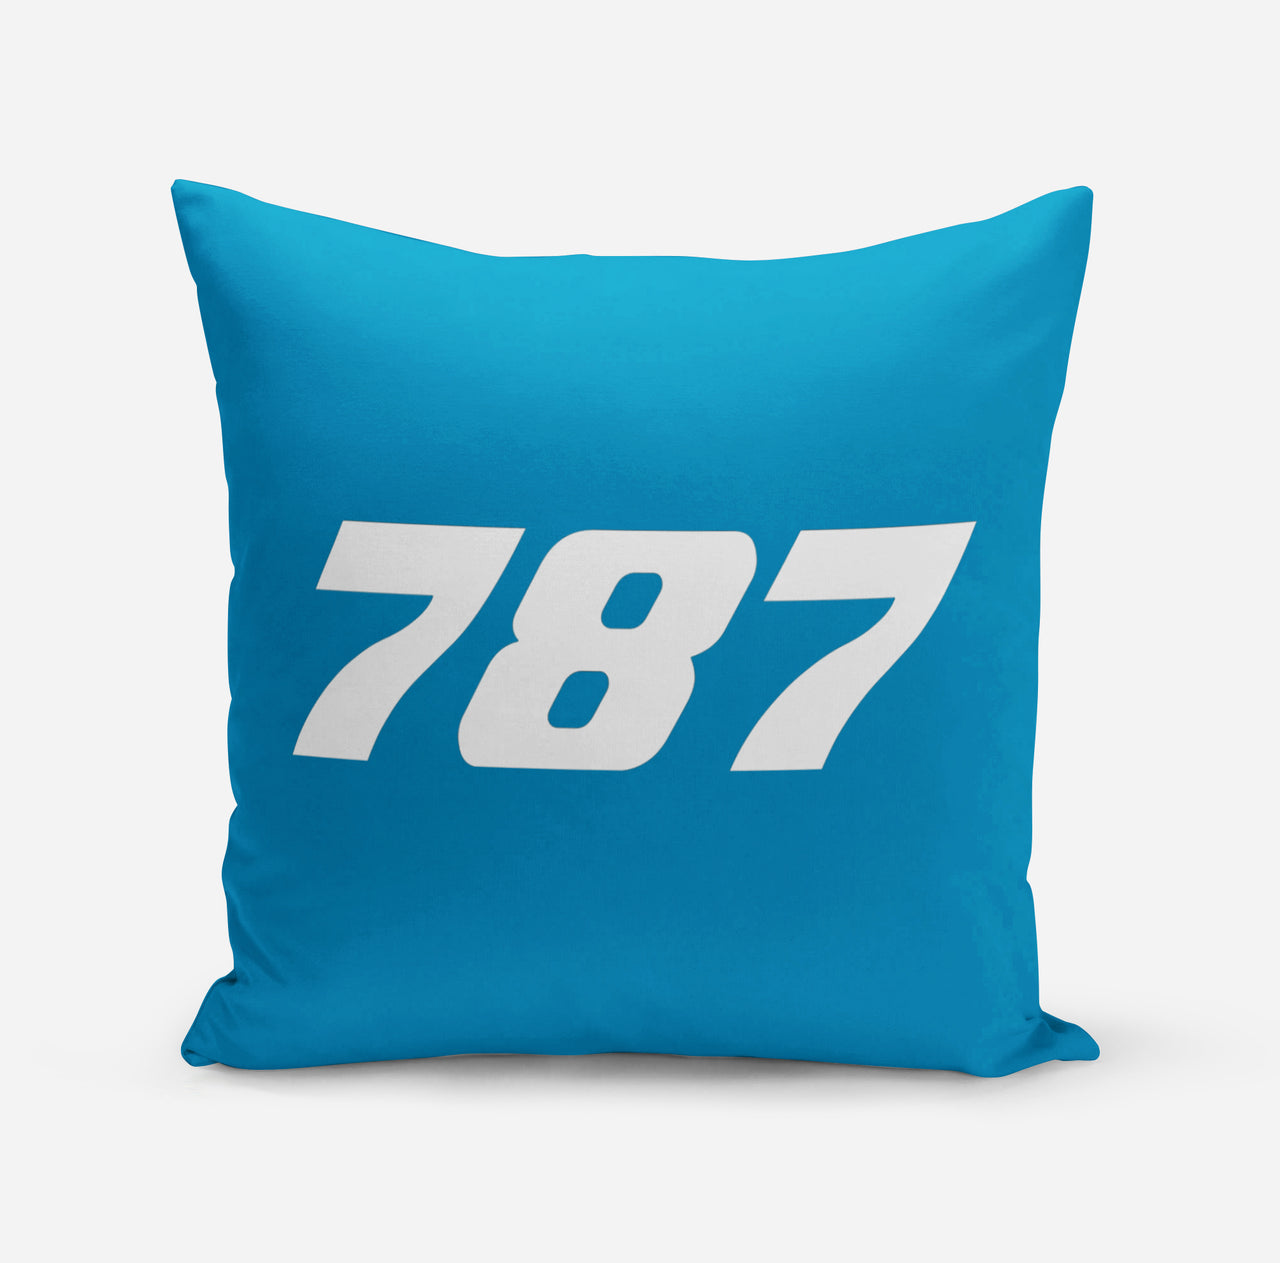 787 Flat Text Designed Pillows